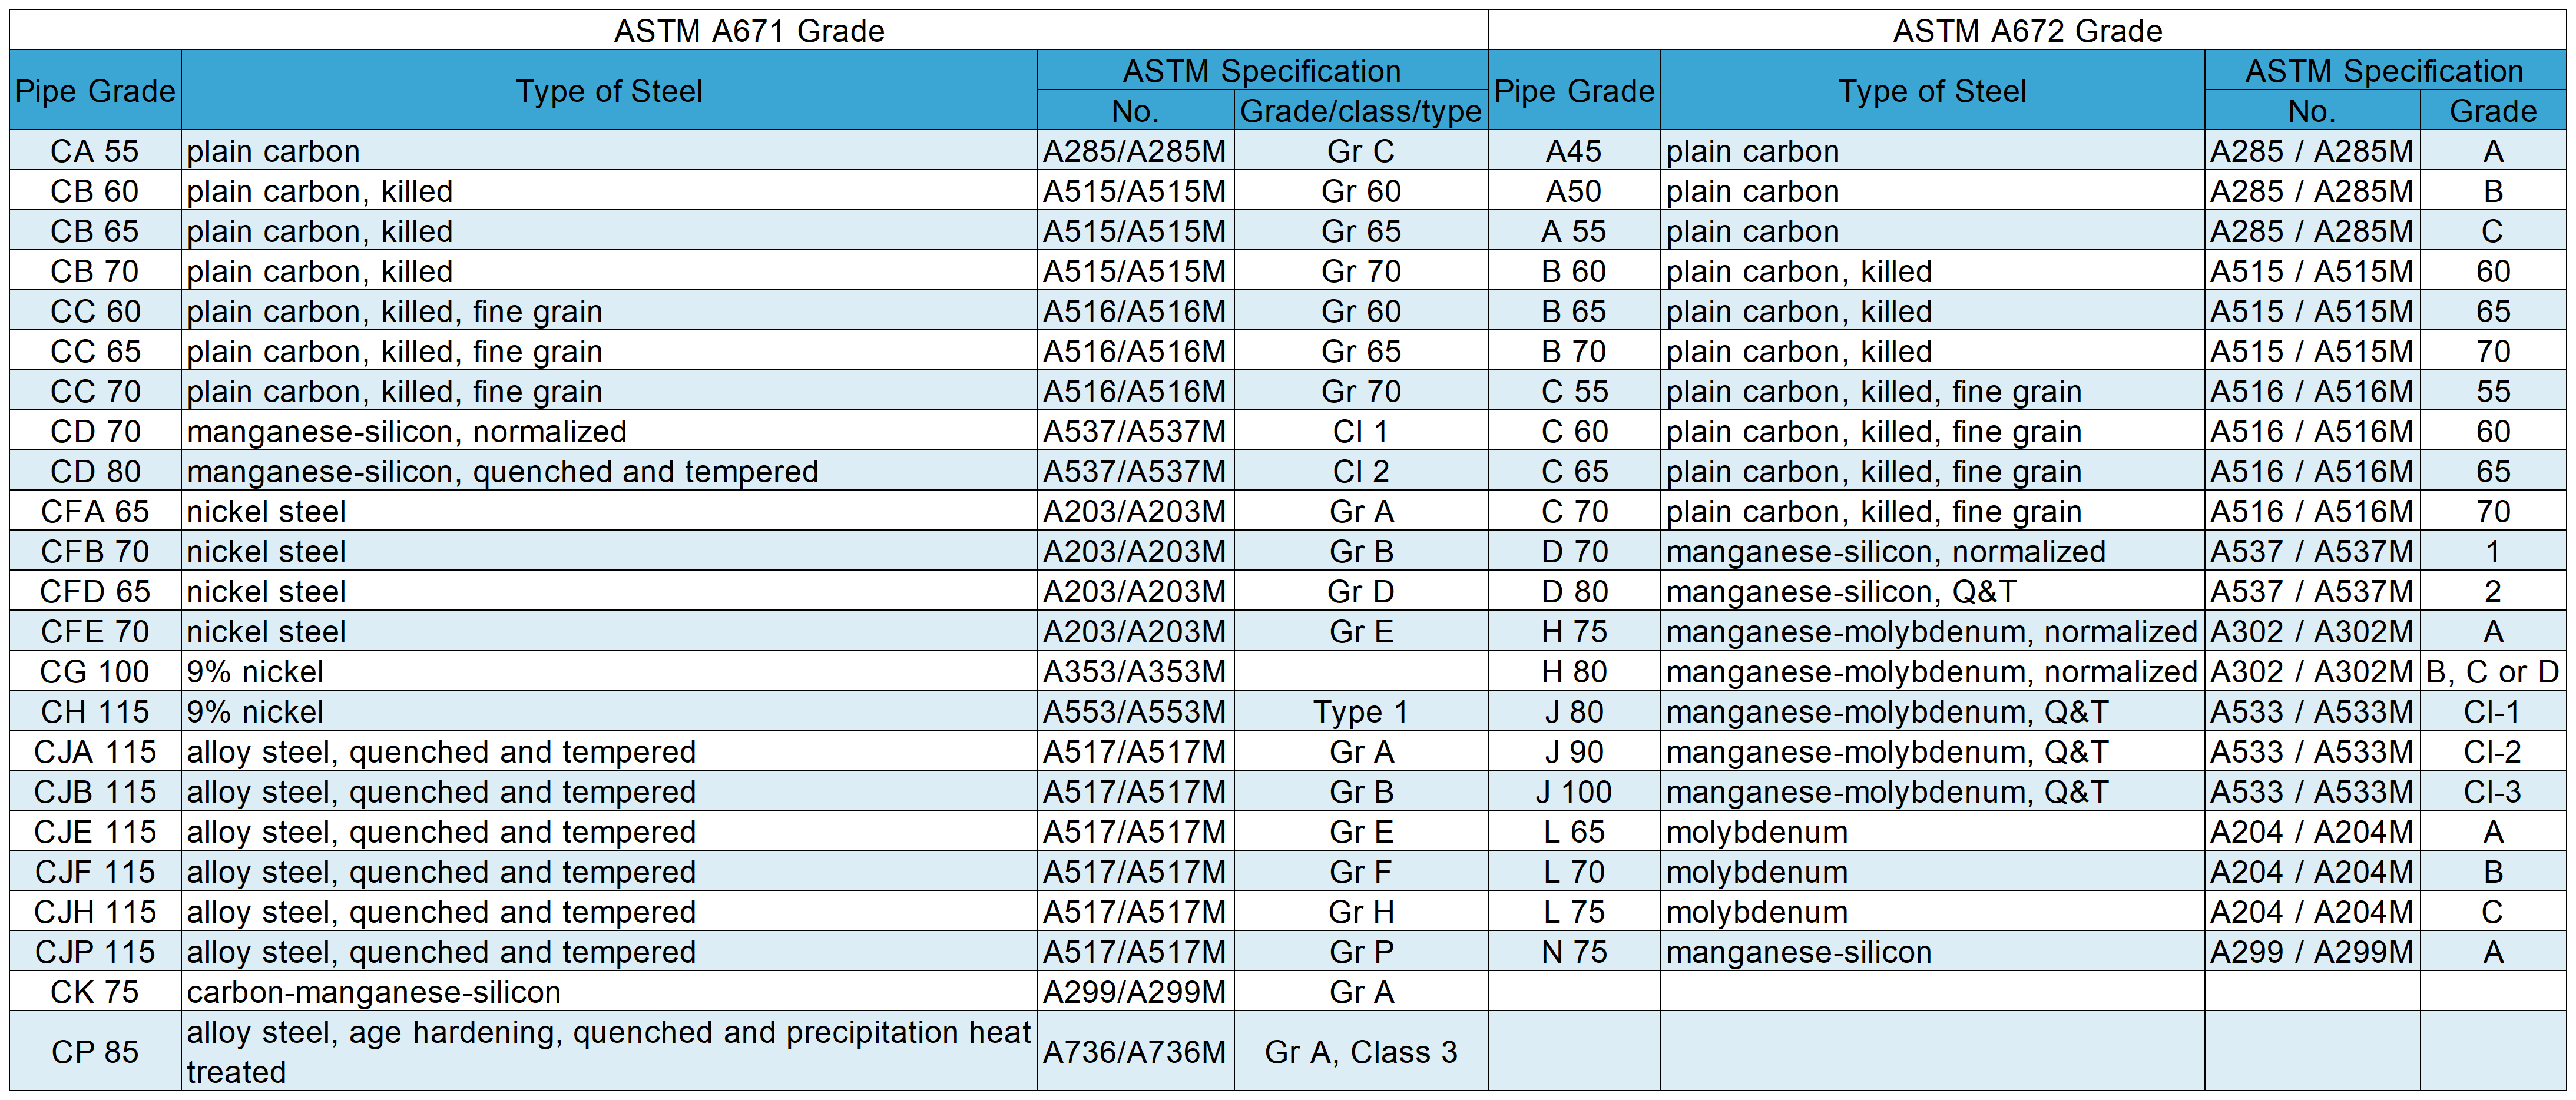 astm a671 відрізняється від a672: клас